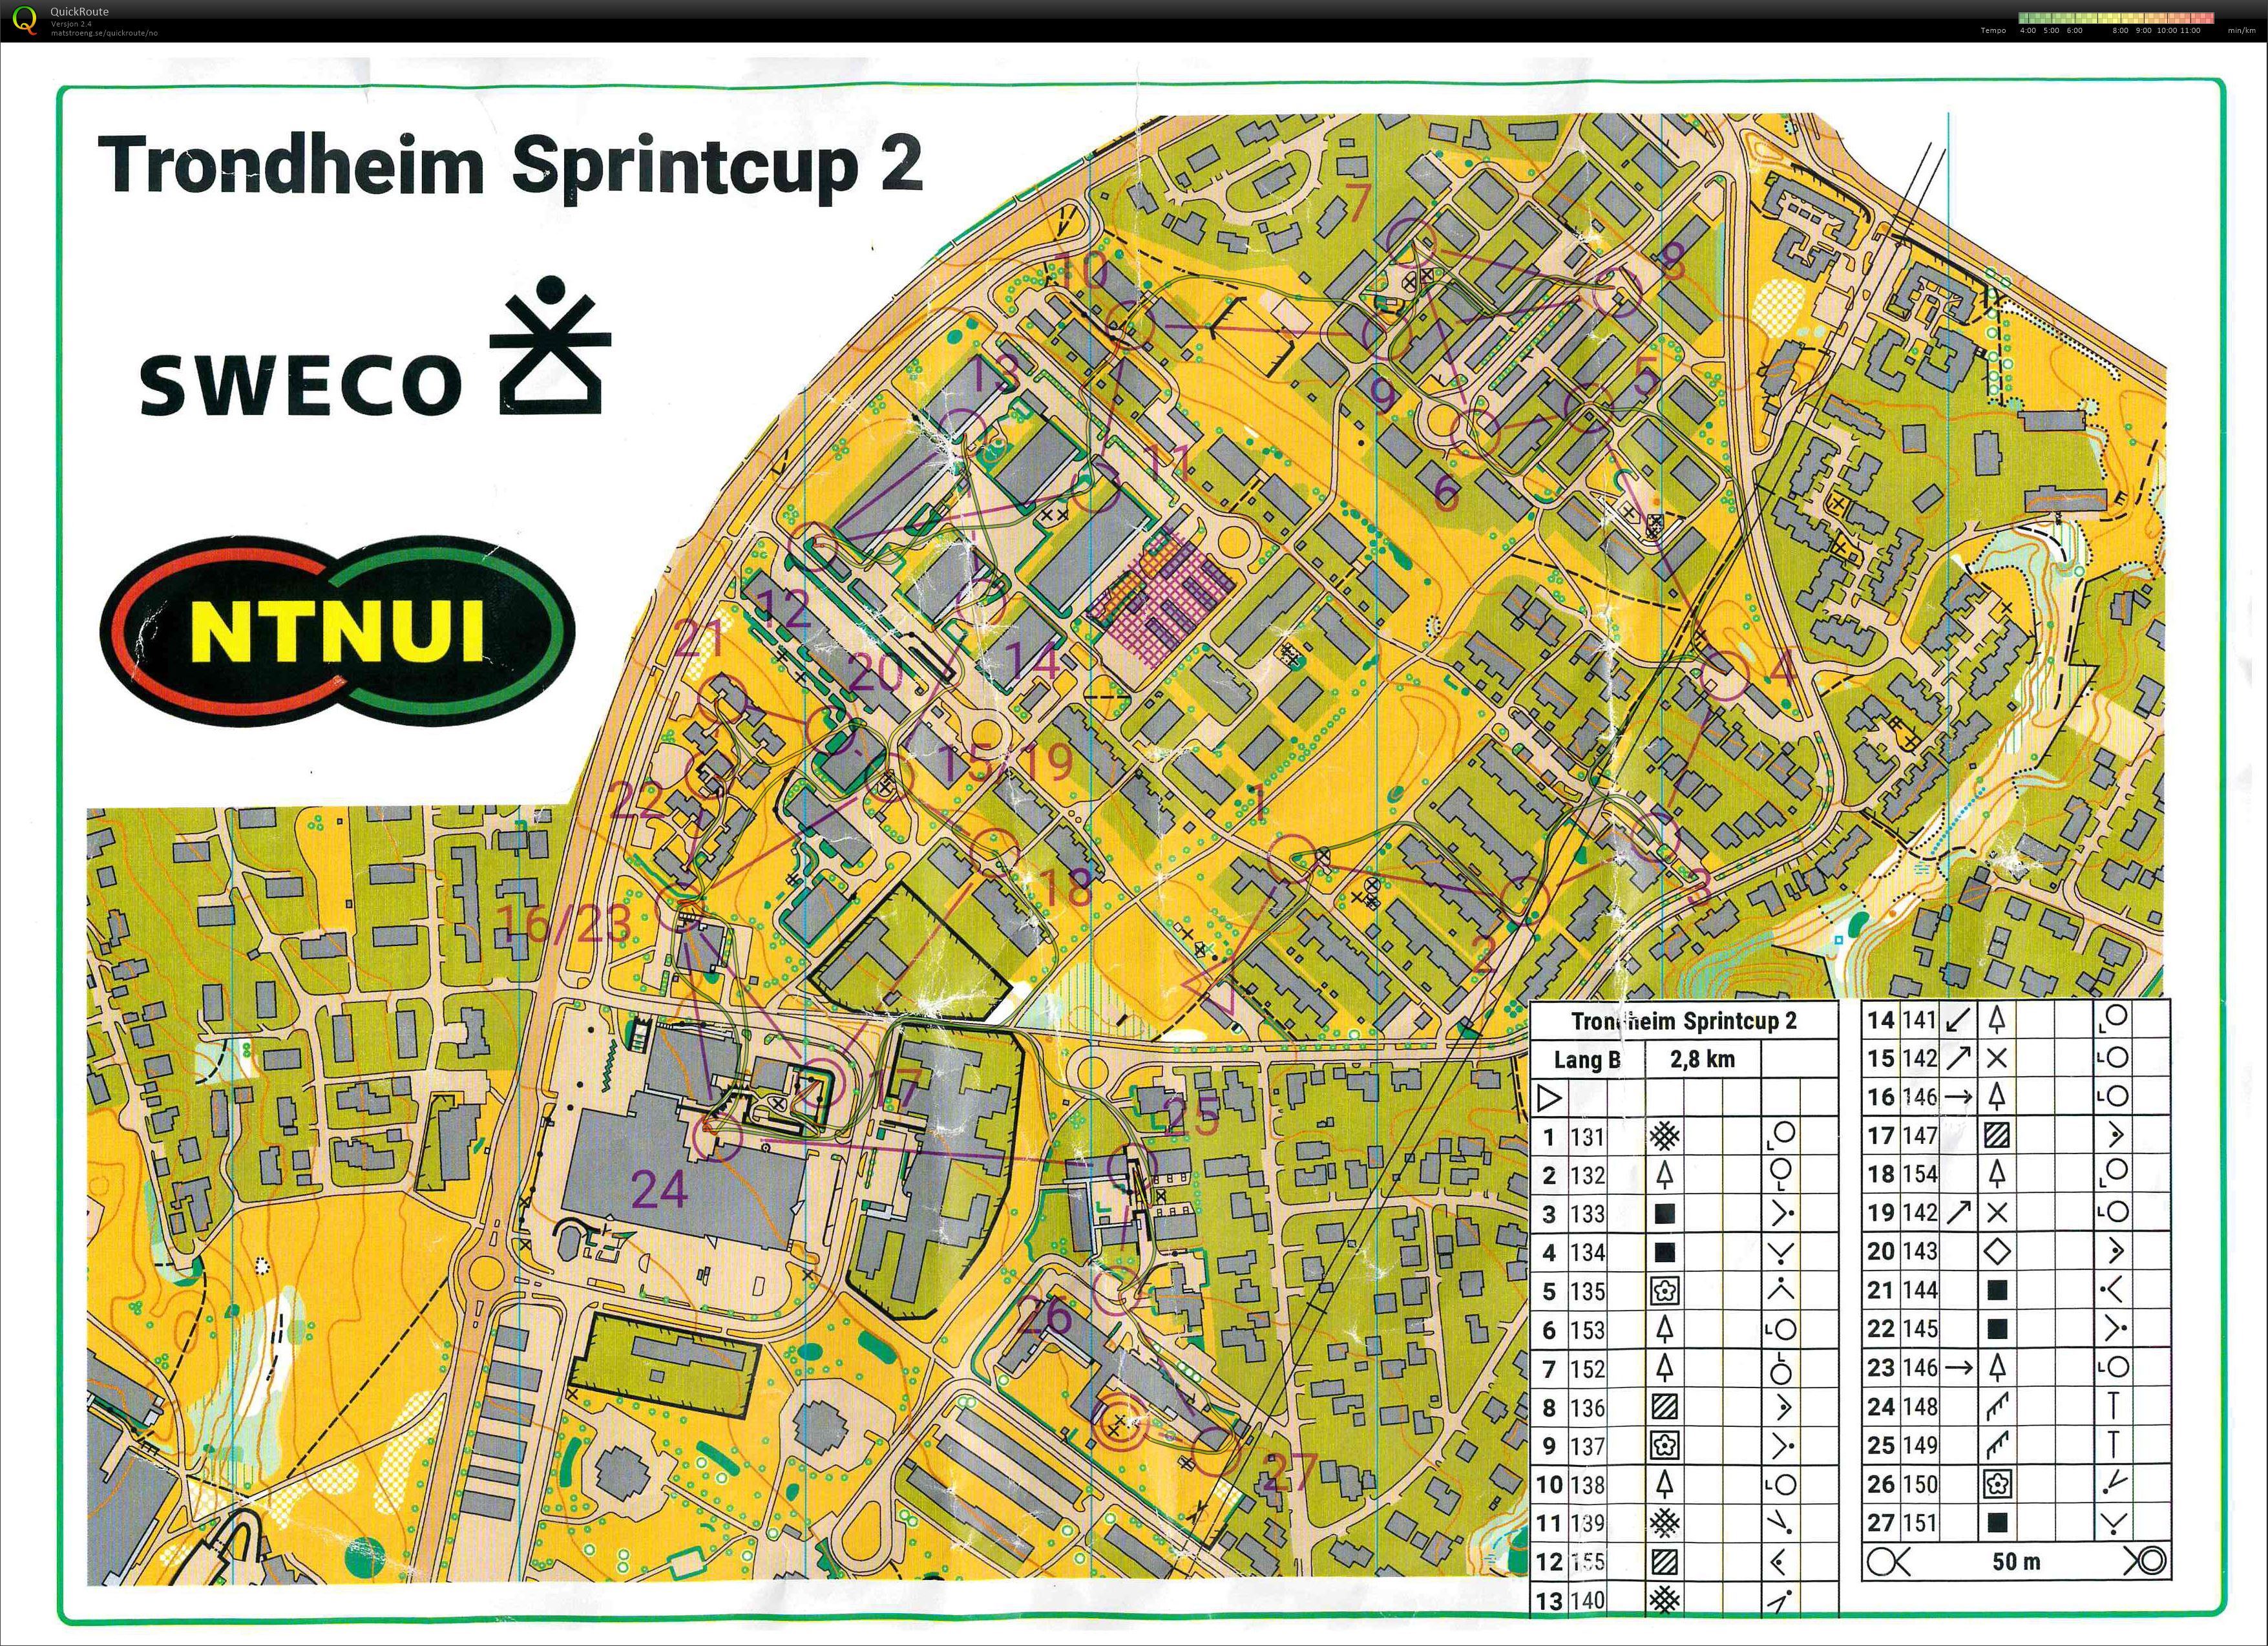 Trondheim Sprintcup # 2, Valentinlyst (21/04/2022)